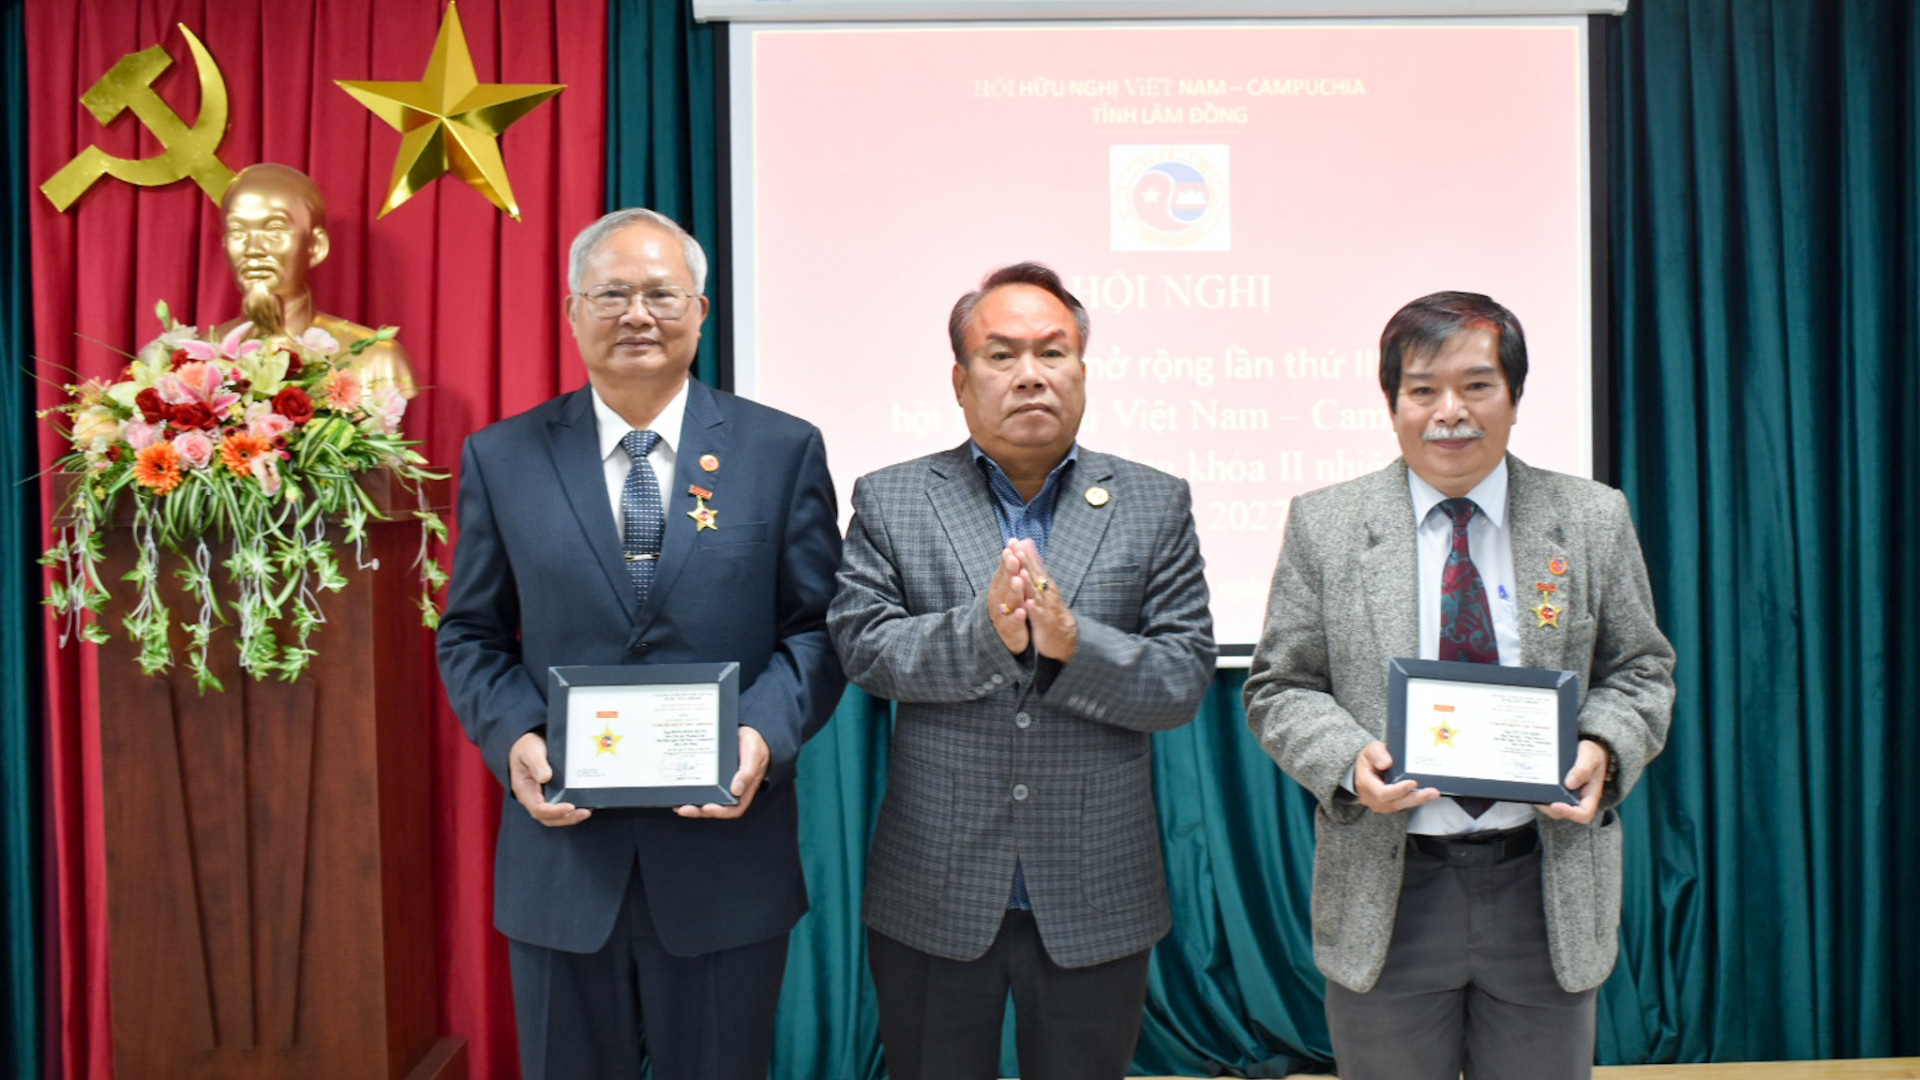 Hội Hữu nghị Việt Nam - Campuchia tỉnh: Tăng cường tình đoàn kết - hữu nghị giữa Nhân dân hai nước